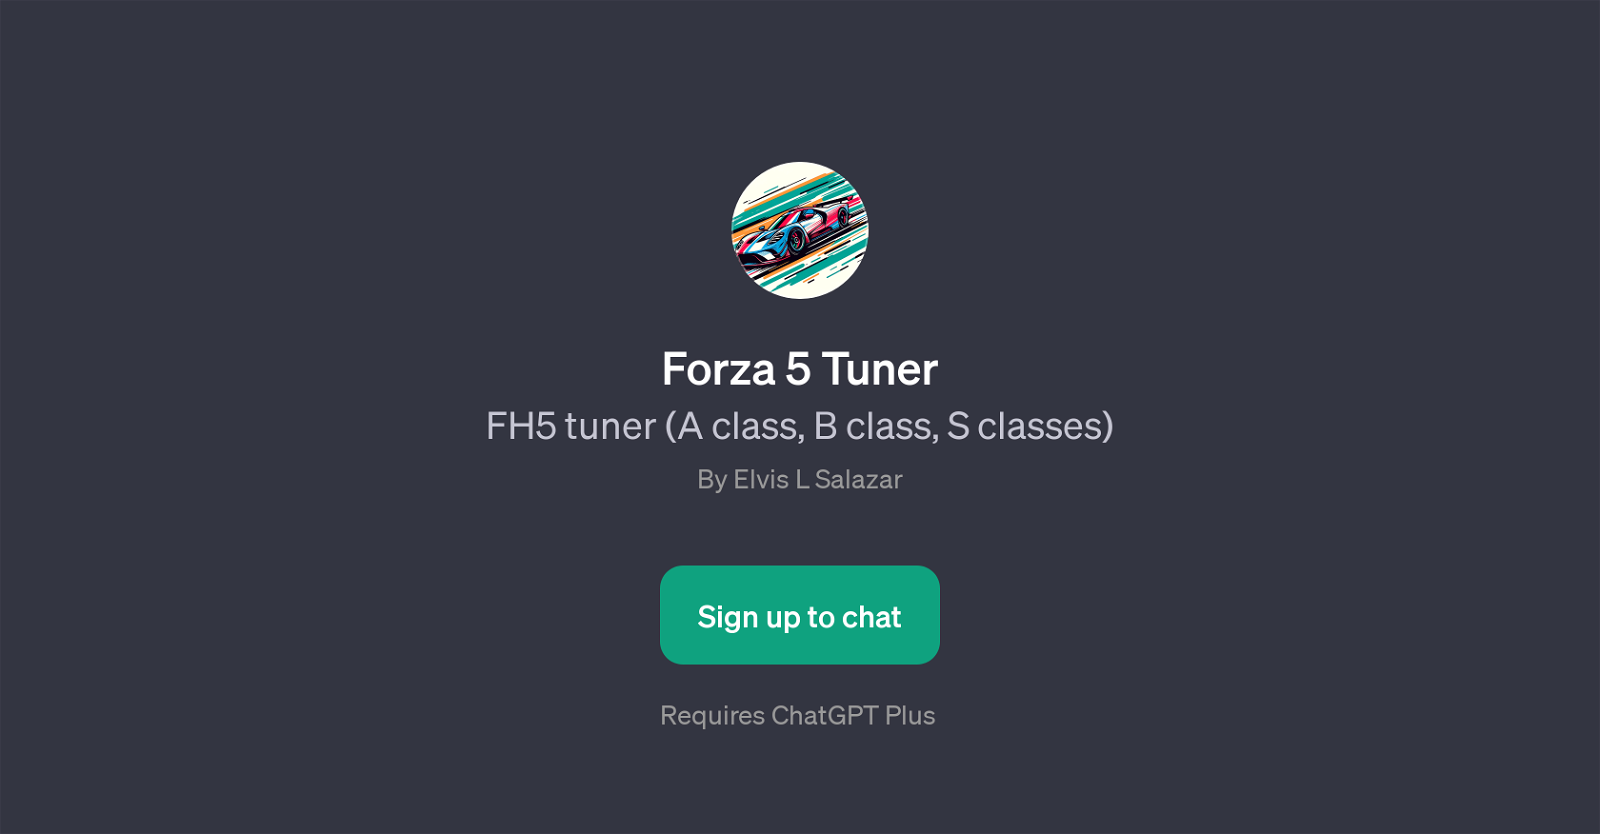 Forza 5 Tuner website